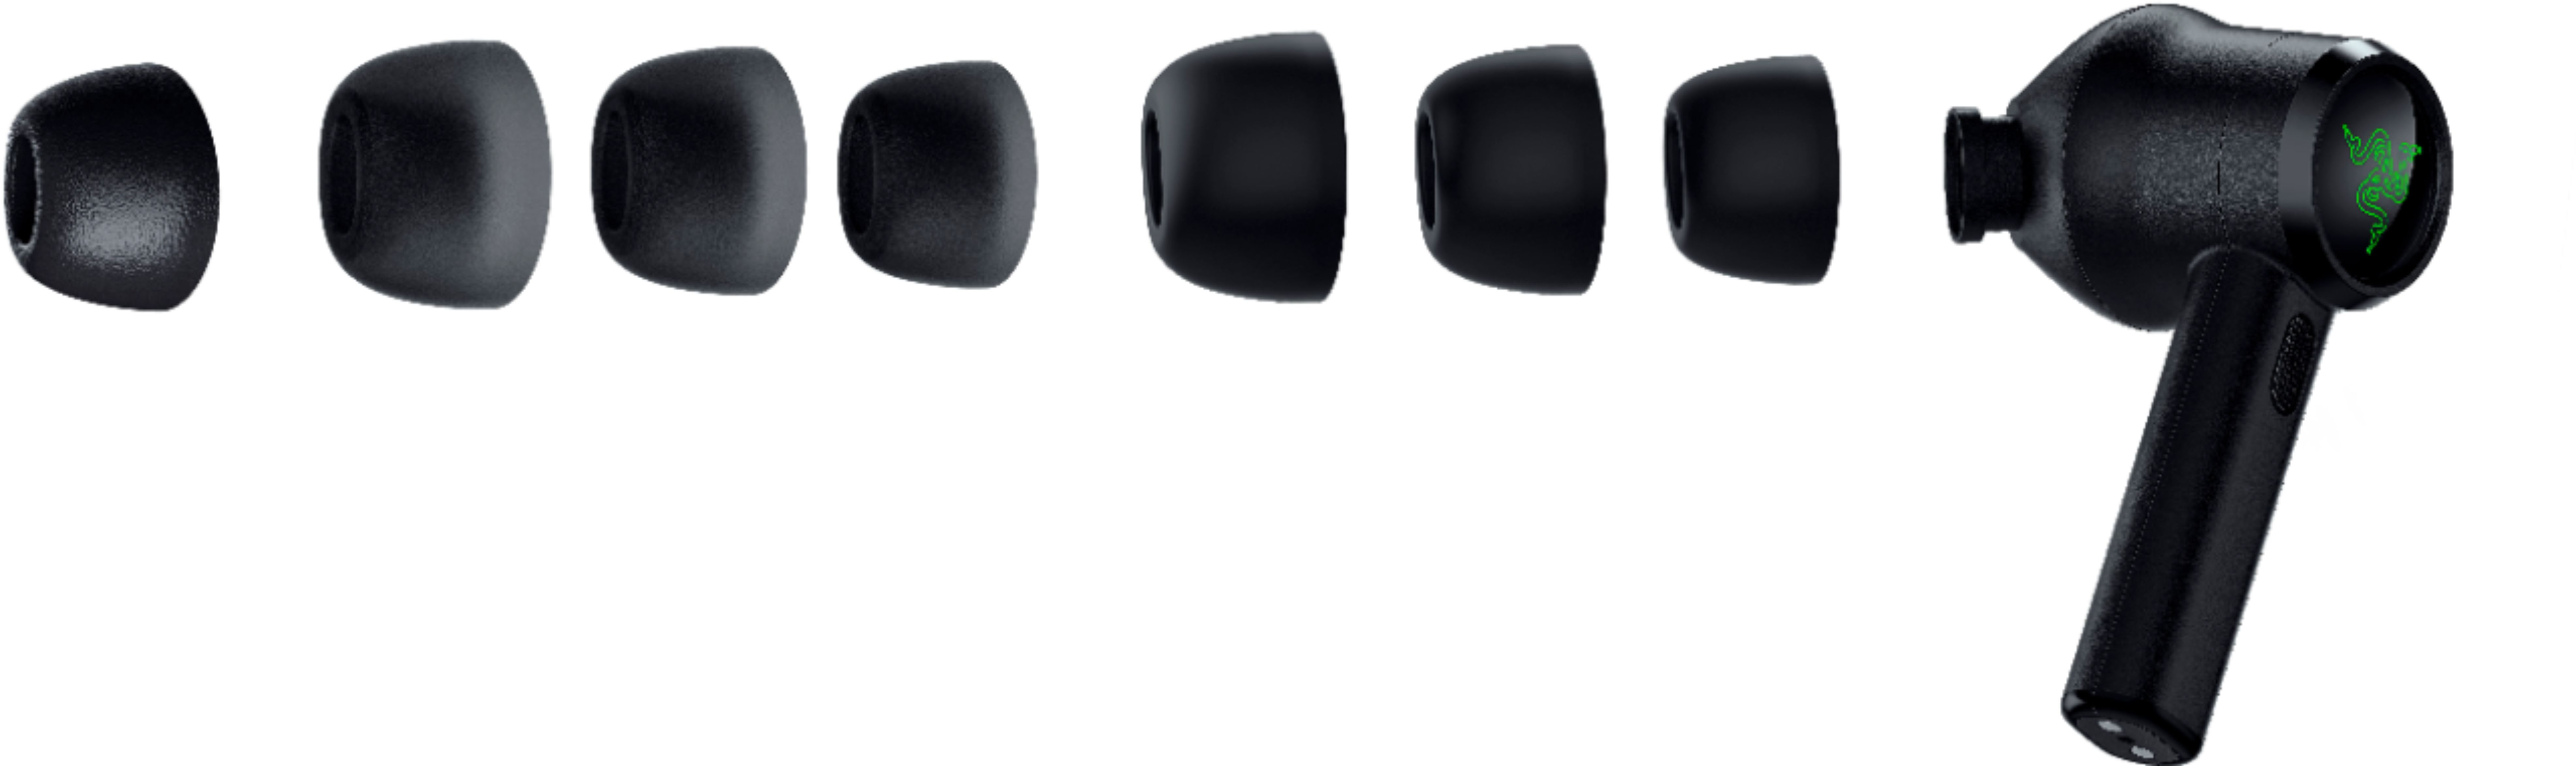 Razer Hammerhead True Wireless Pro Noise Canceling In Ear Earbuds Black Rz12 R3u1 Best Buy